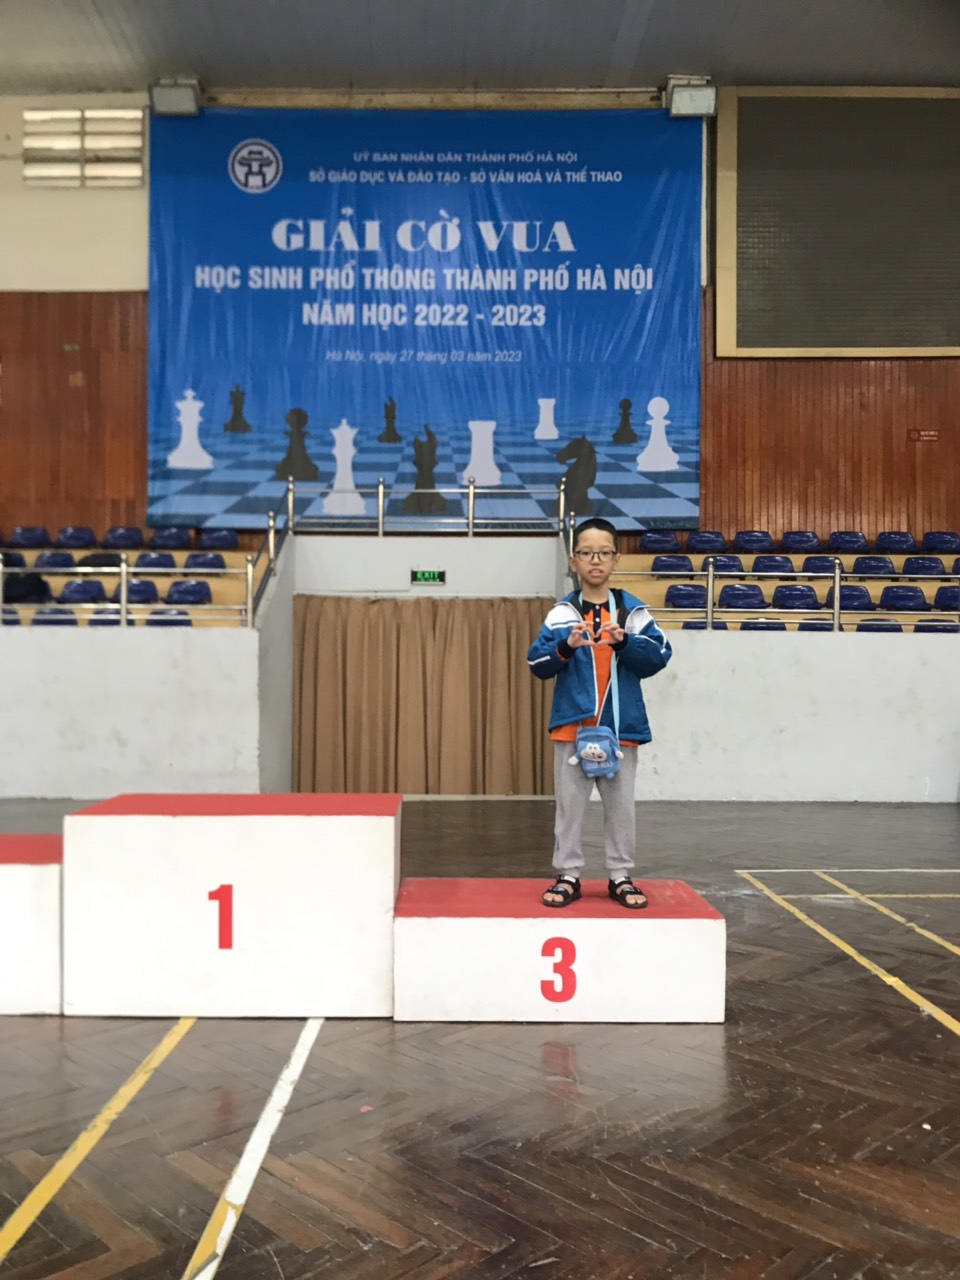 Em Lương Quang Khải lớp 3A5 đạt giải Ba môn Cờ vua học sinh phổ thông Thành phố Hà Nội năm học 2022 - 2023.